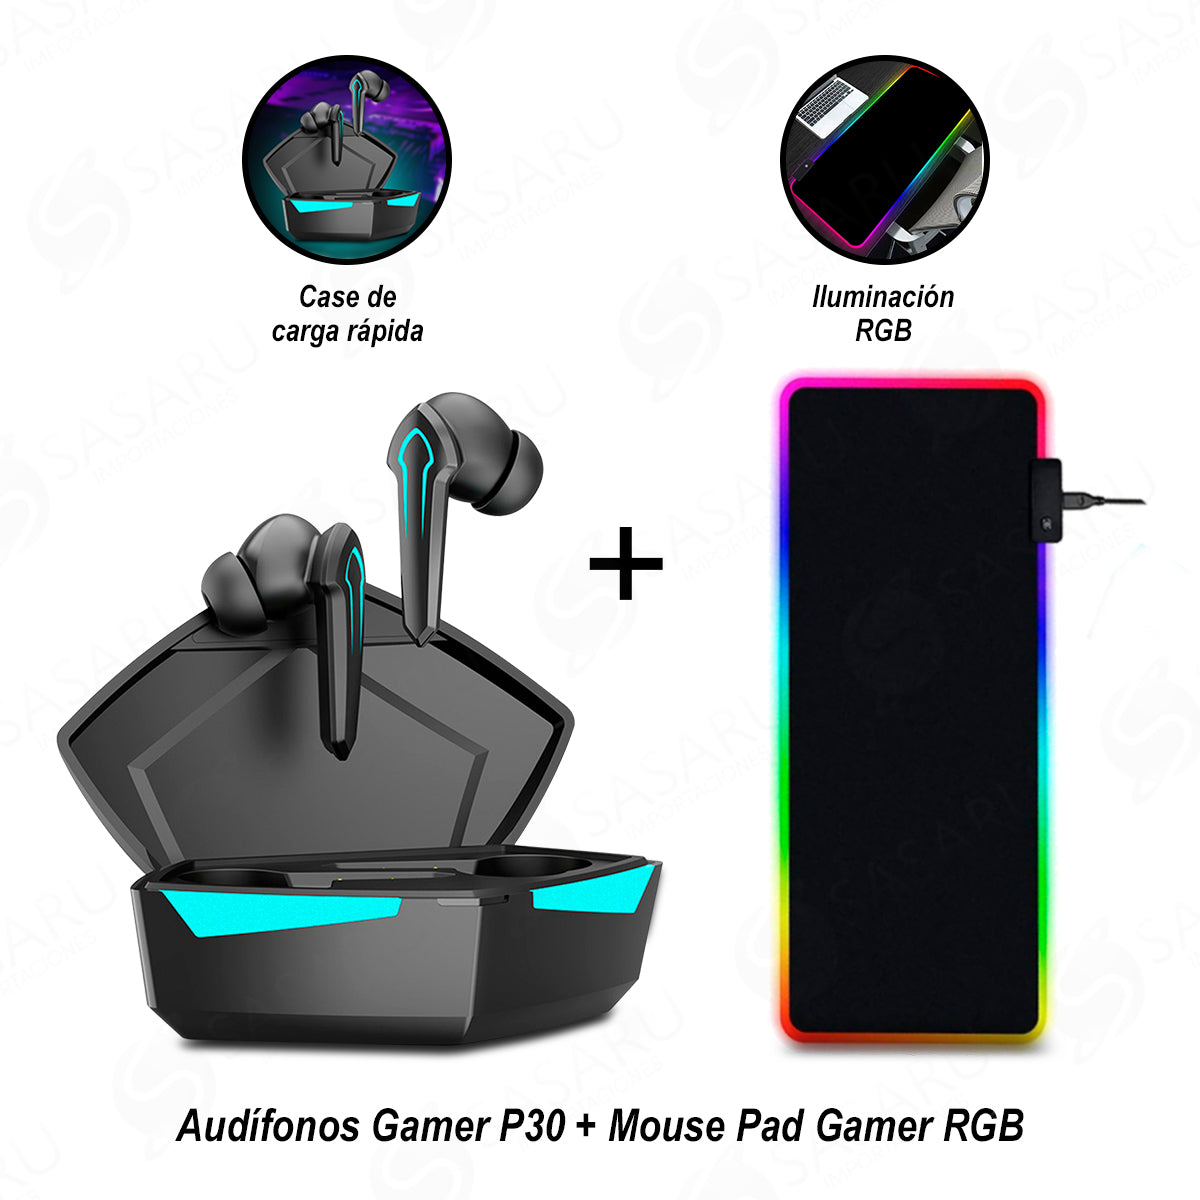 Audífonos Gamer Inalámbricos P30 LED + Mouse Pad Gamer Iluminación RGB